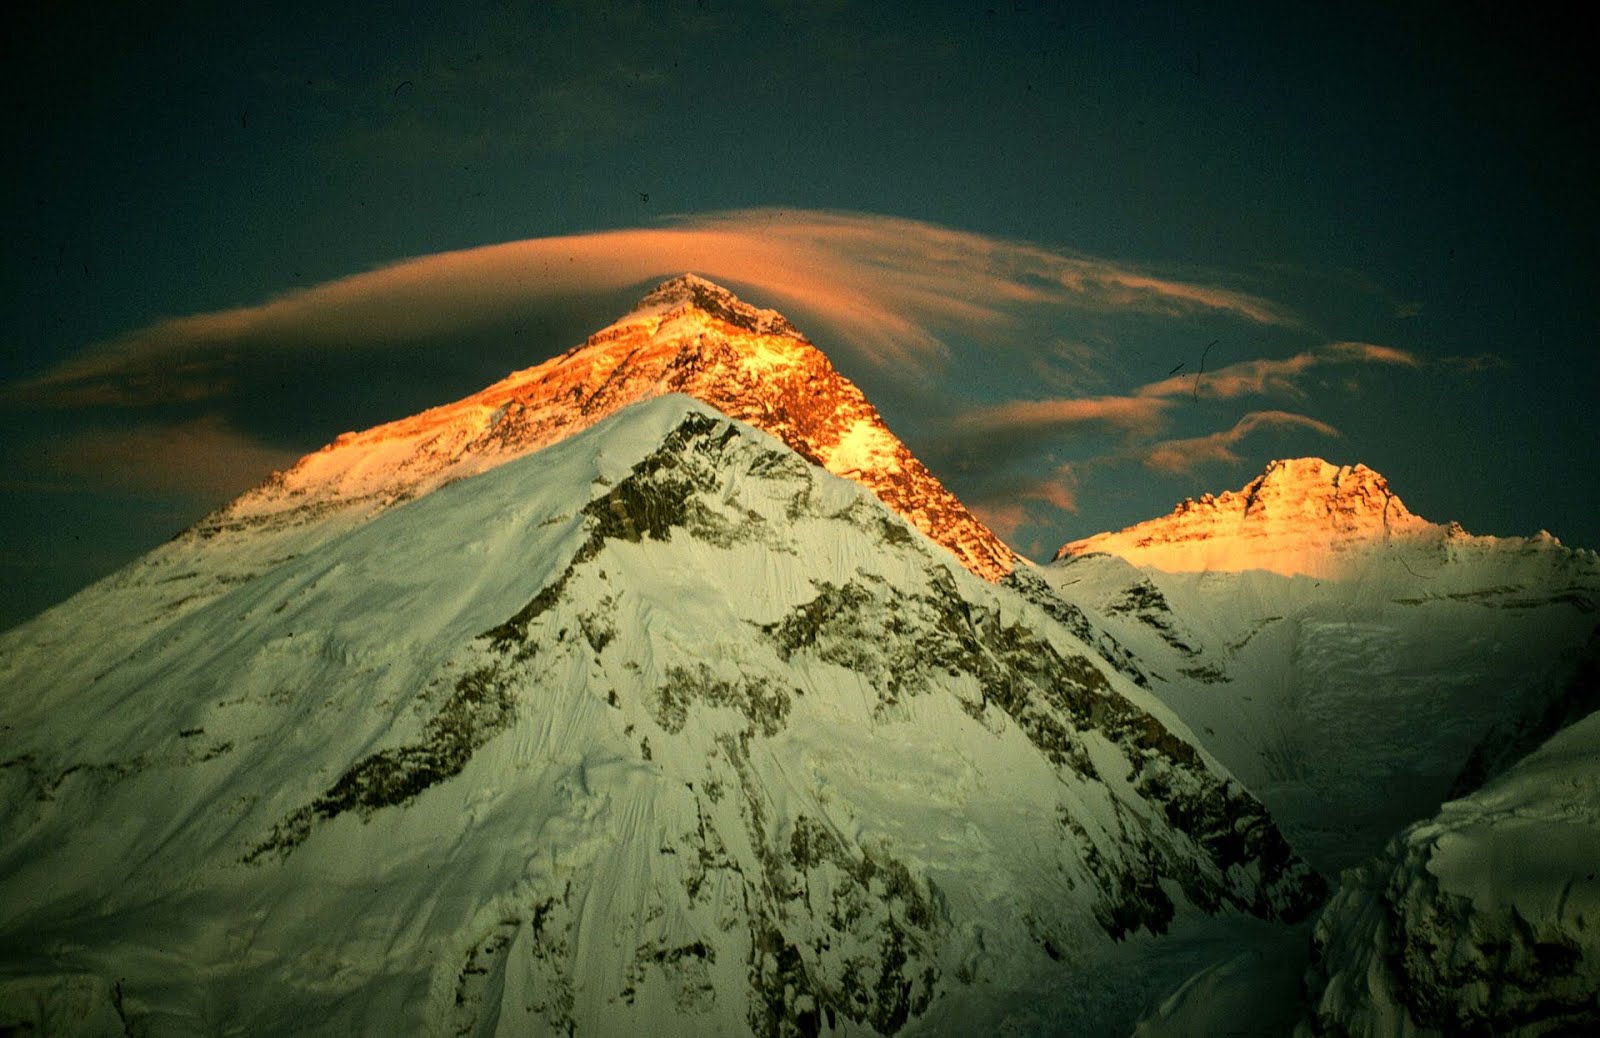 Bí ẩn về cấu trúc rỗng và kho báu bí ẩn bên trong dãy Himalaya - Ảnh 5.